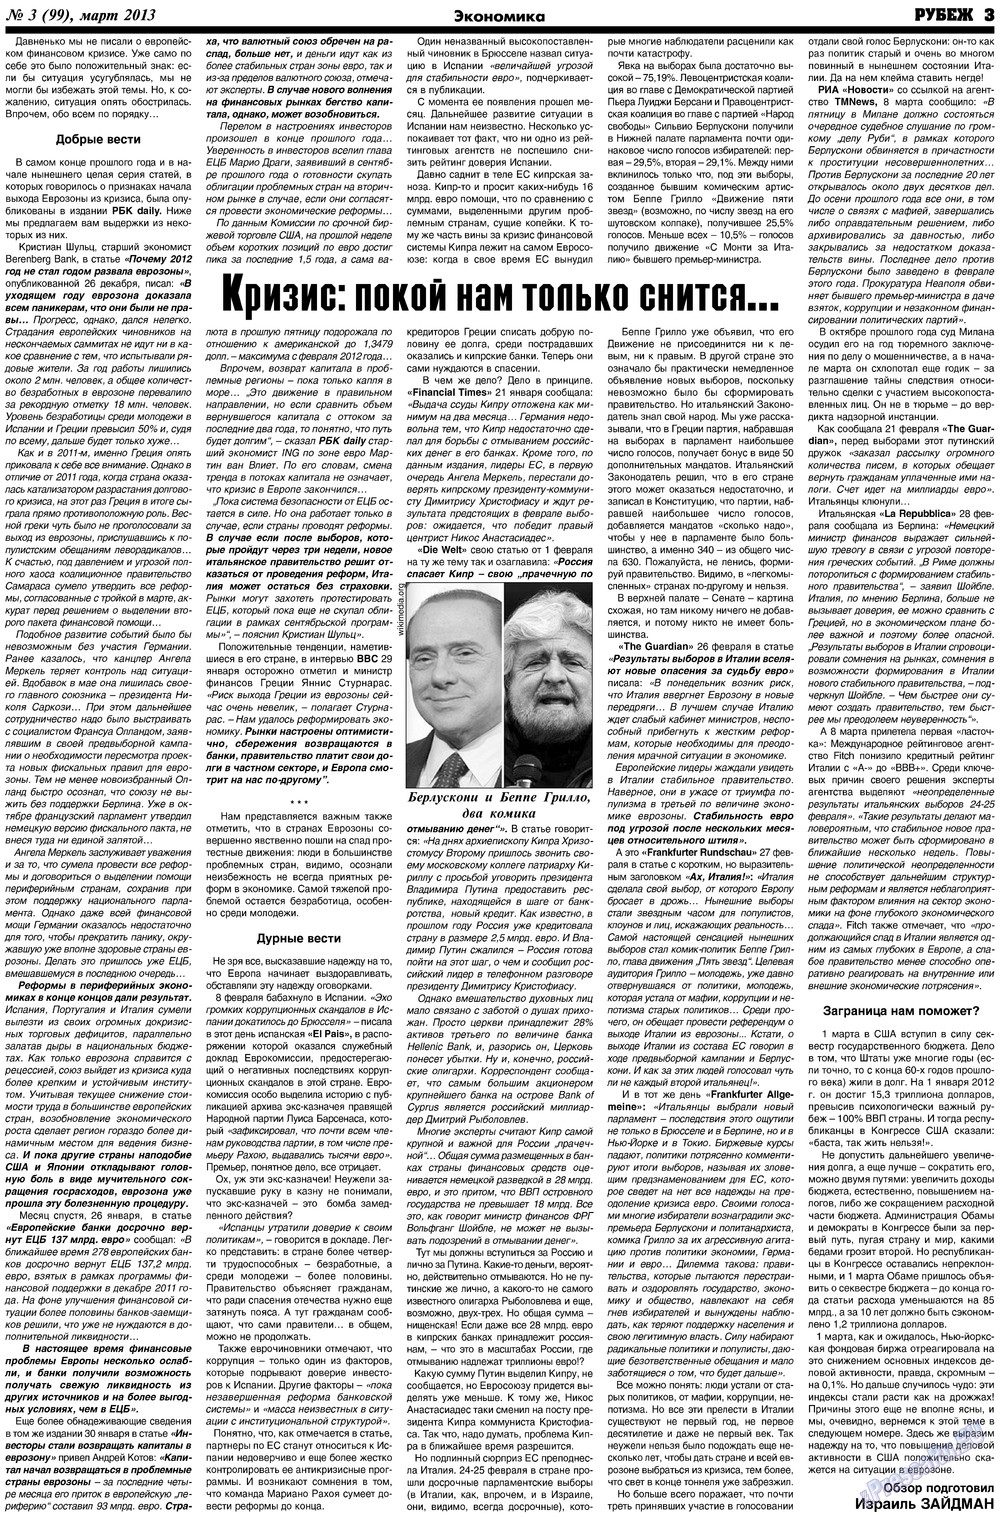 Рубеж (газета). 2013 год, номер 3, стр. 3